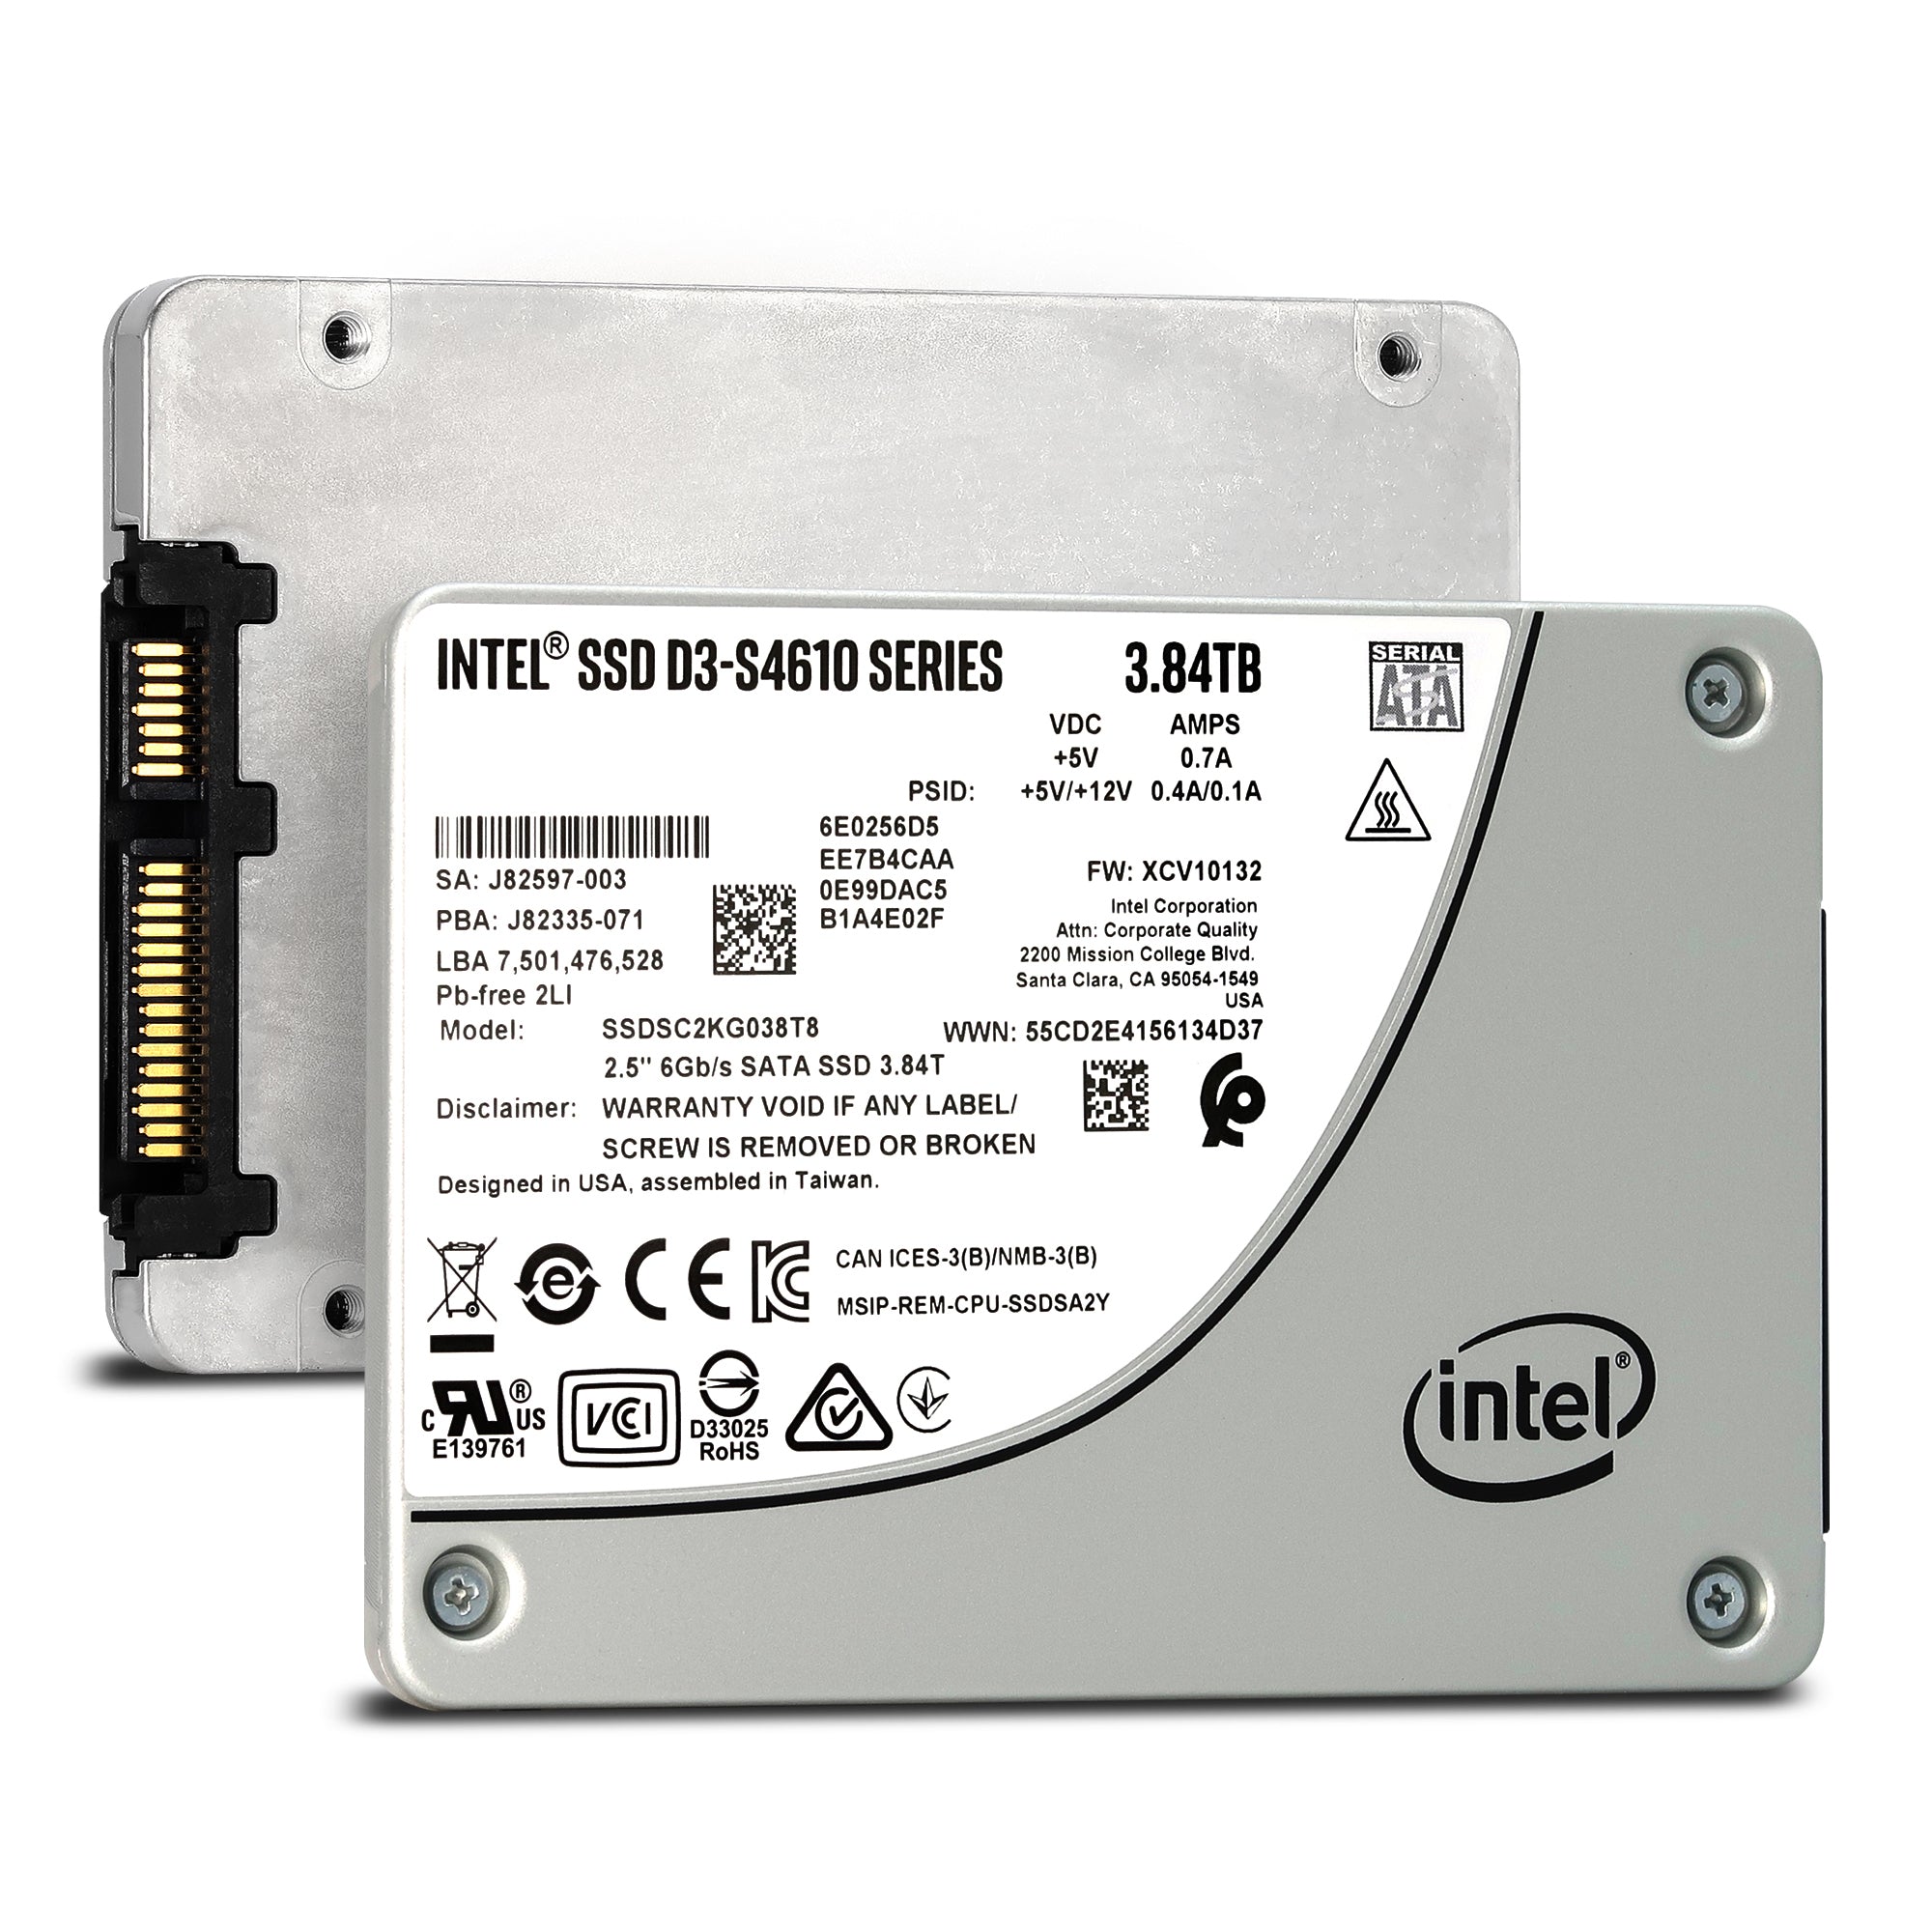 Intel D3-S4610 SSDSC2KG038T801 3.84TB SATA 6Gb/s 2.5" AES 256-bit Solid State Drive - Main